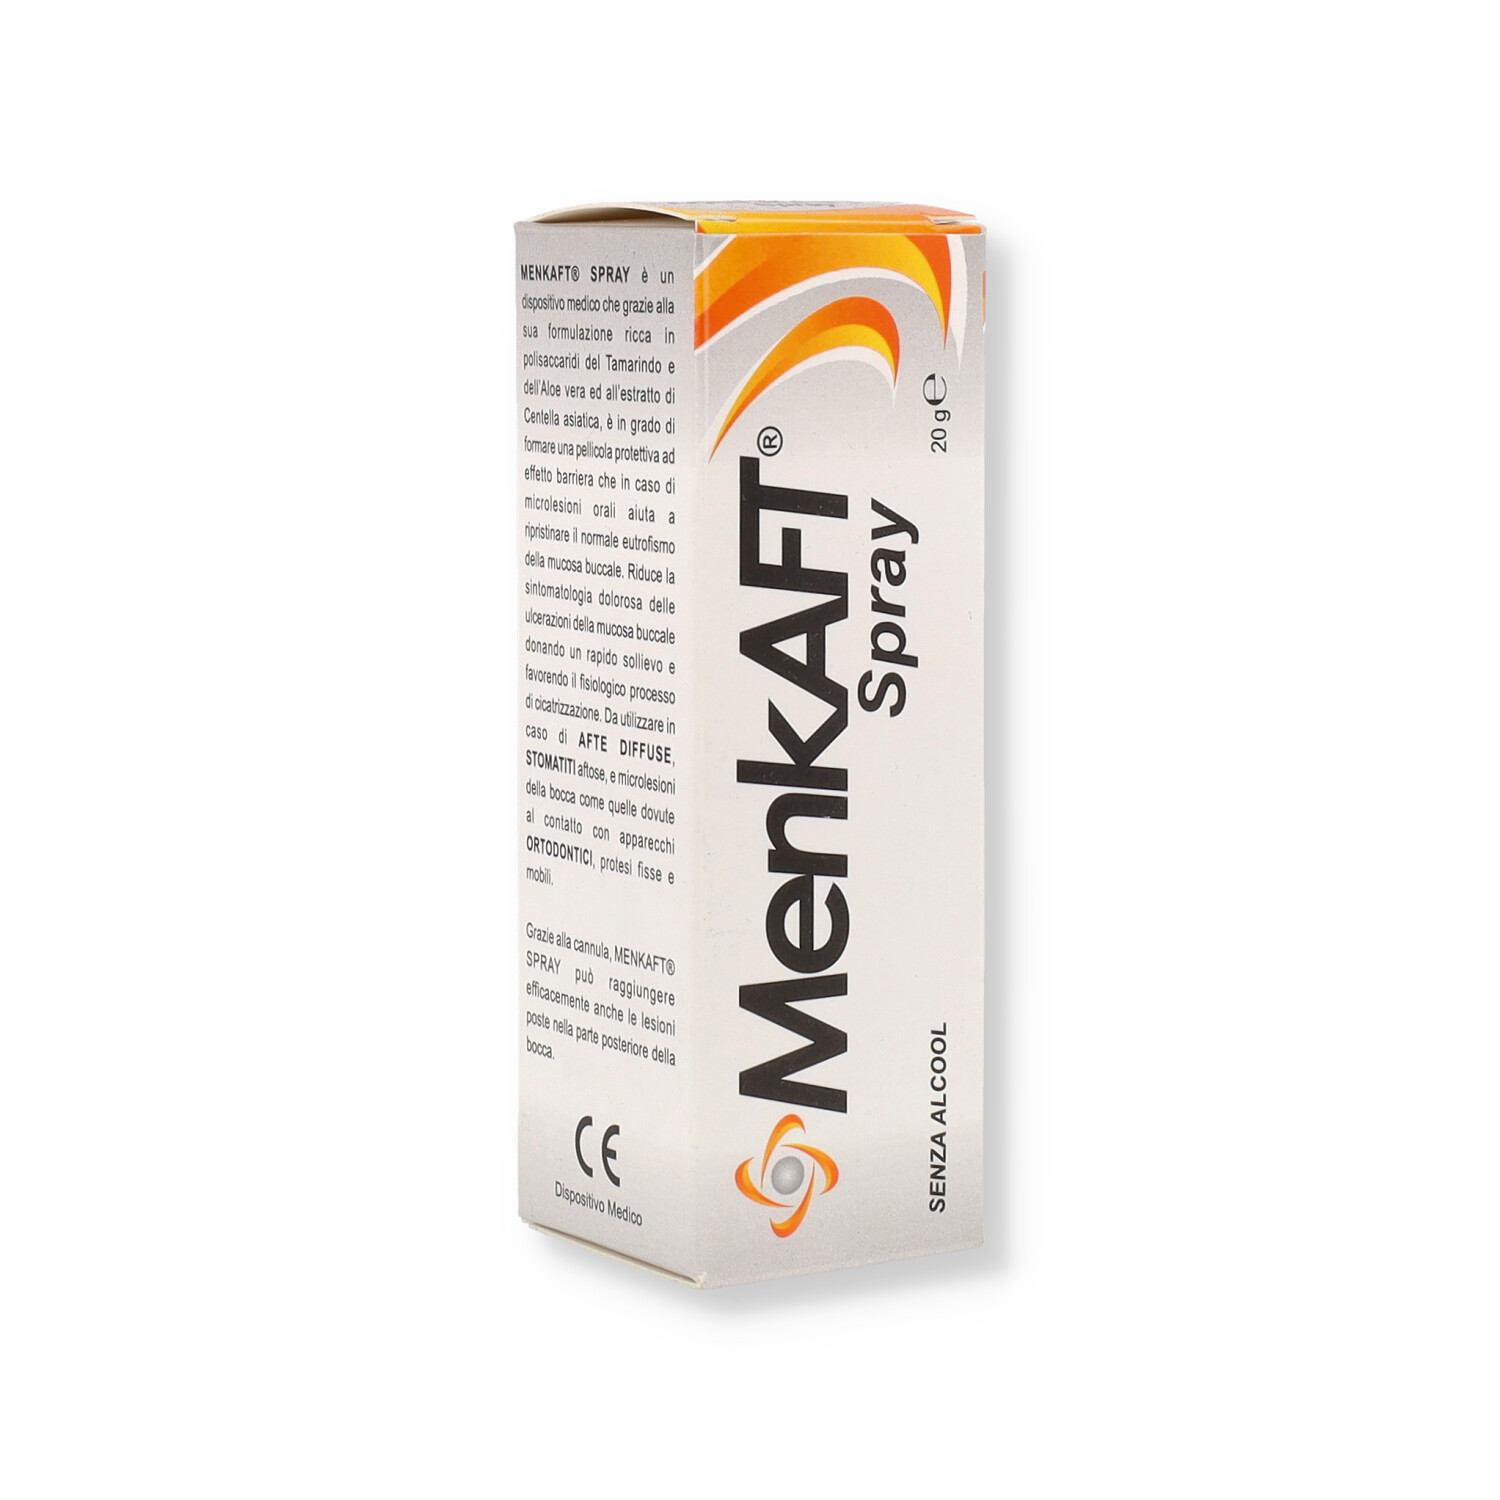 Menkaft Spray - Trattamento delle Lesioni del Cavo Orale - 20 g